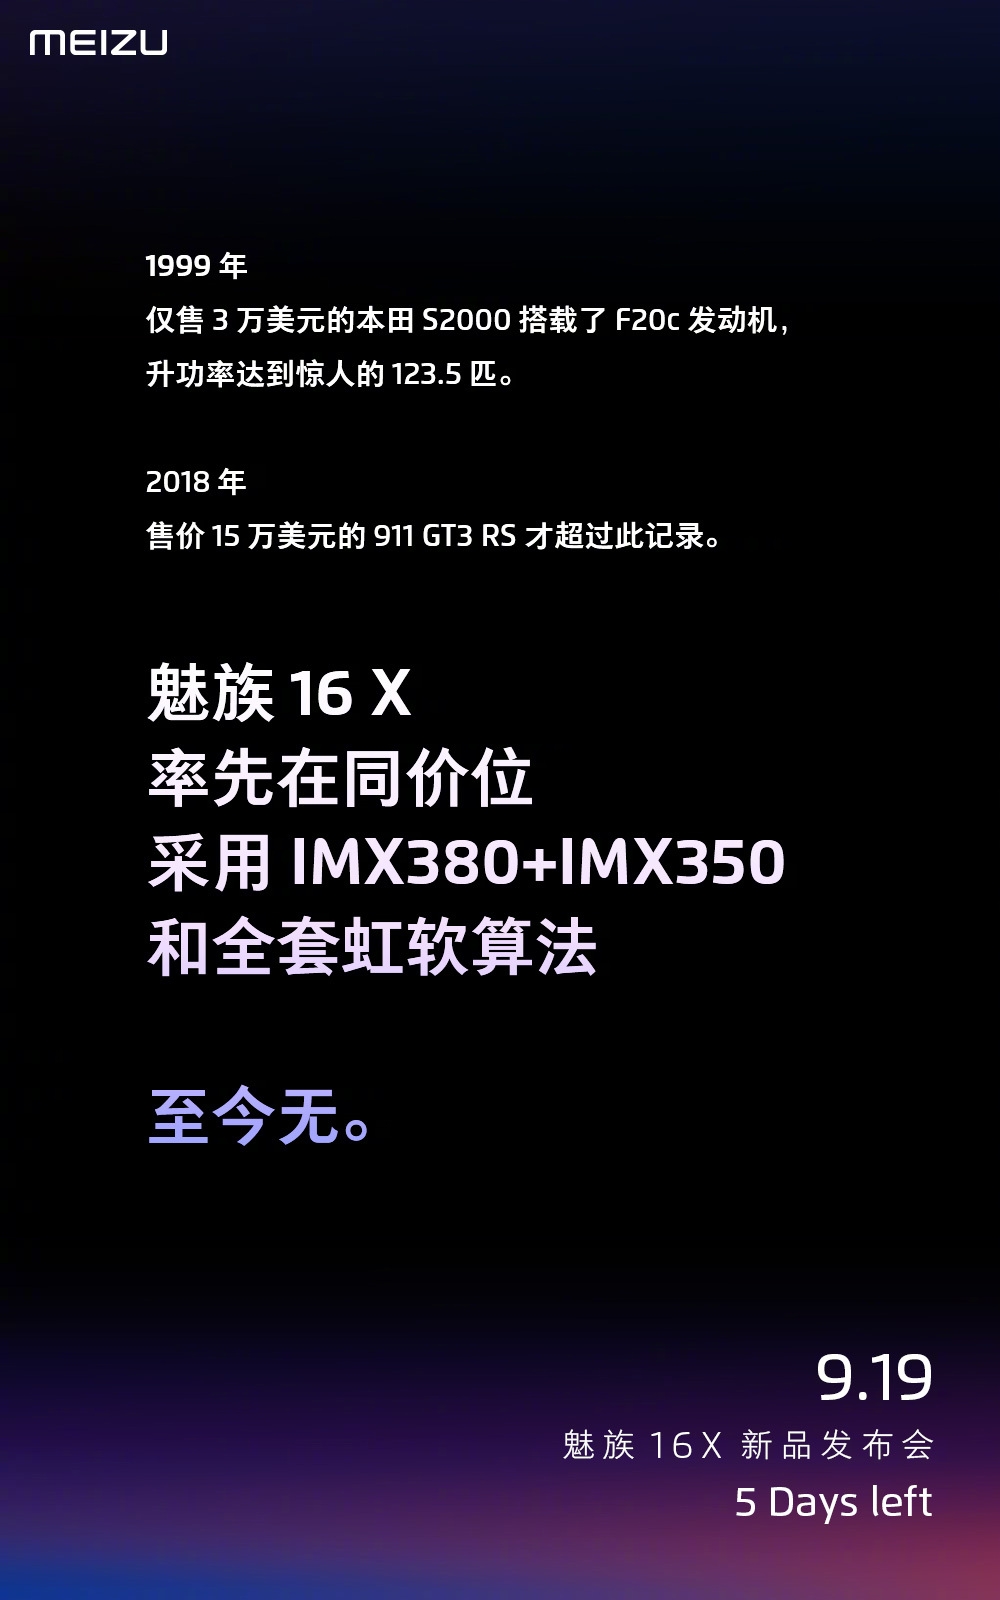 骁龙710加持 魅族16X相机公布：同价位无敌